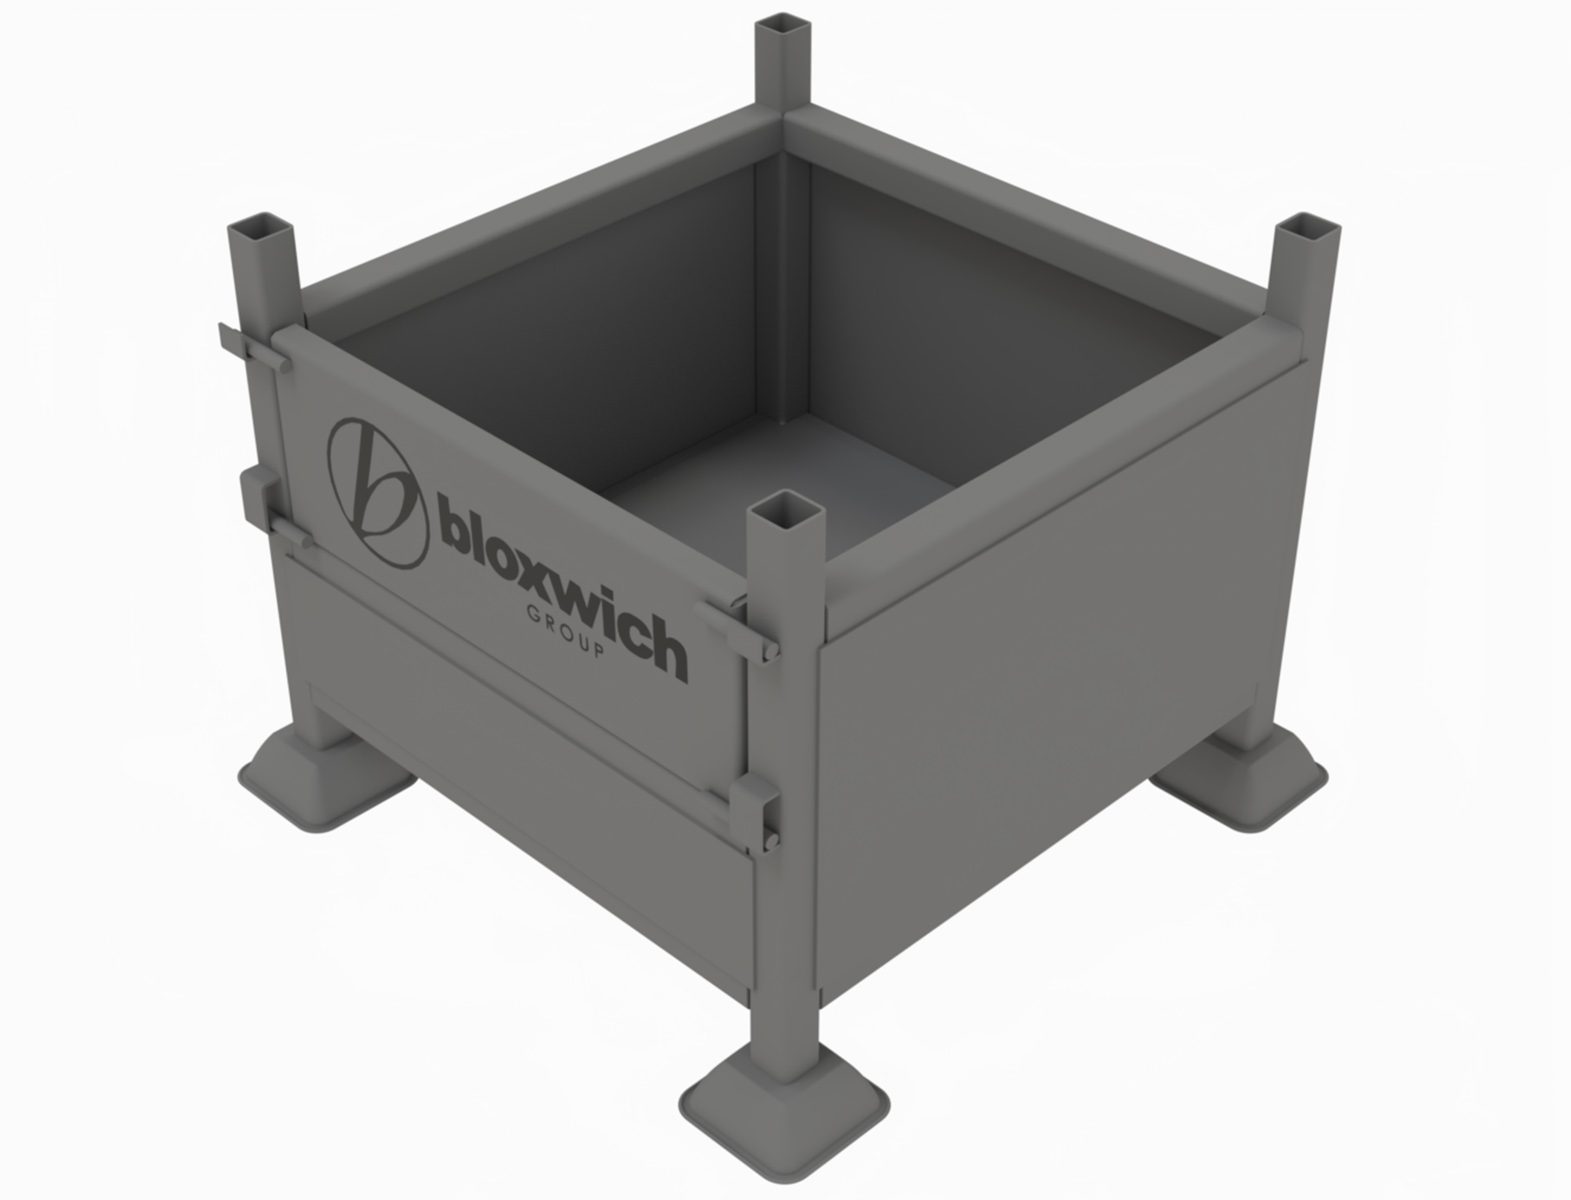 Bloxwich BCP18018 2ft x 2ft steel bin with folding door